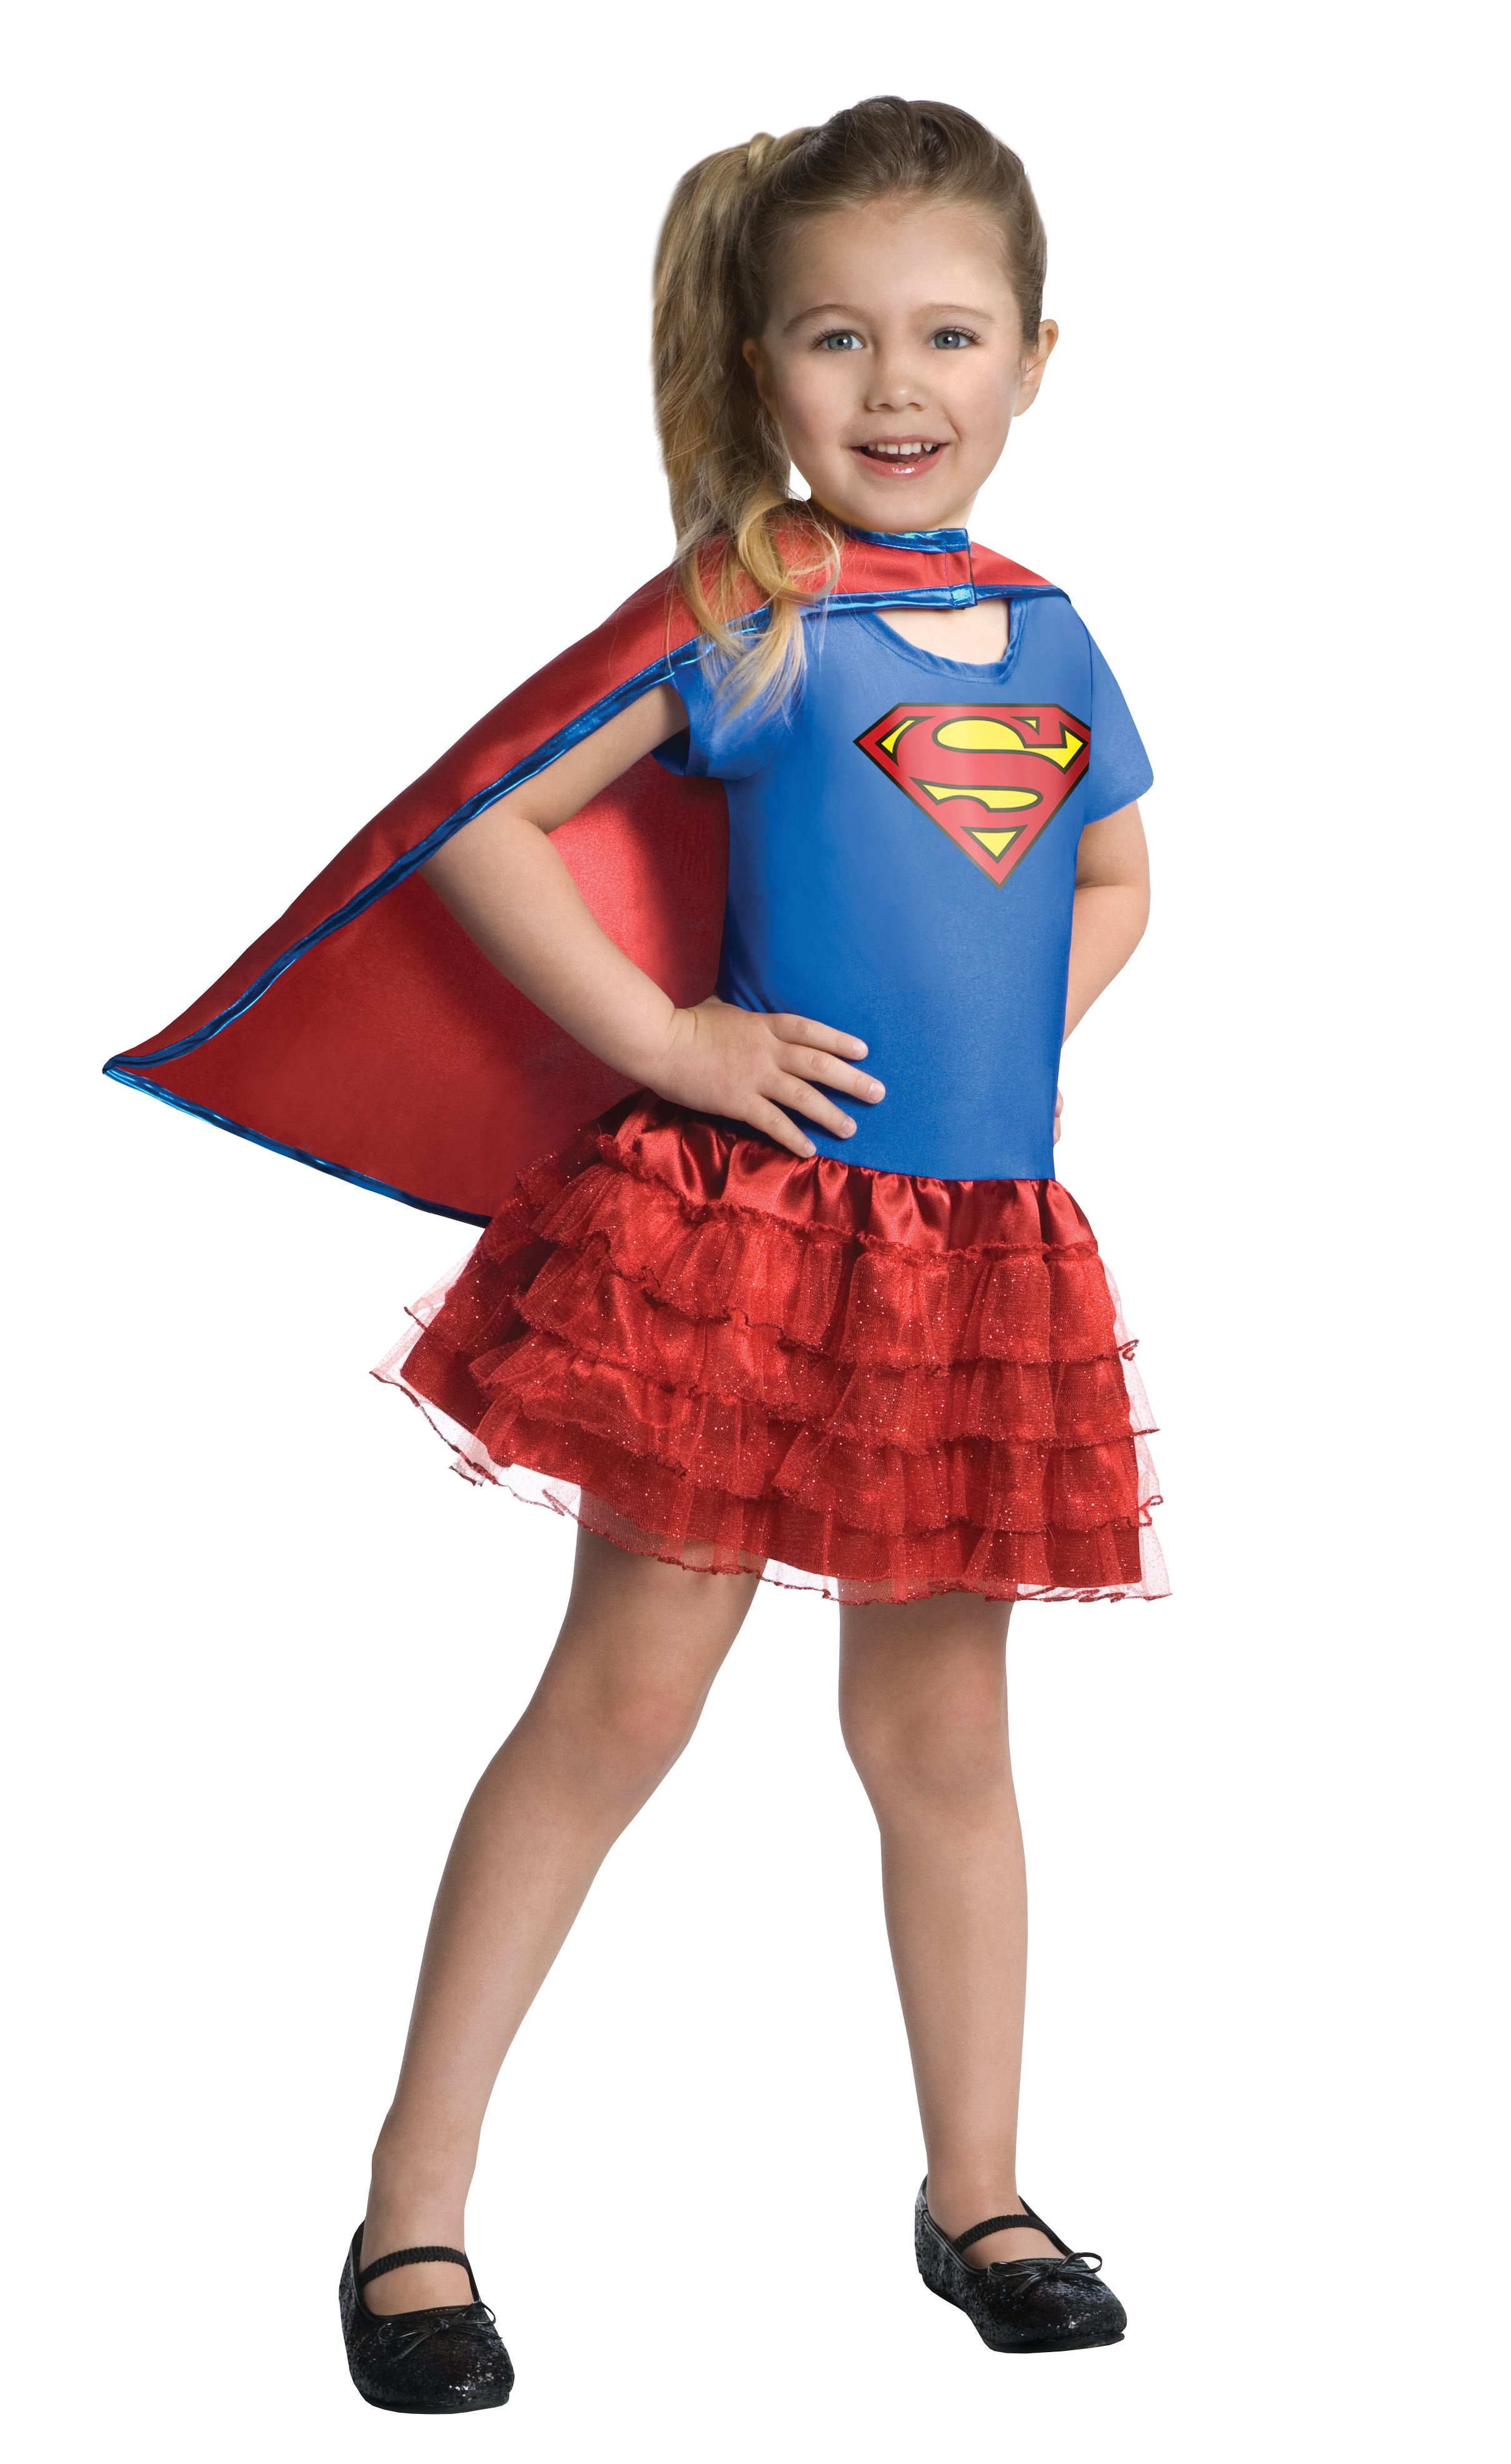 Superhero Costumes For Little Girls